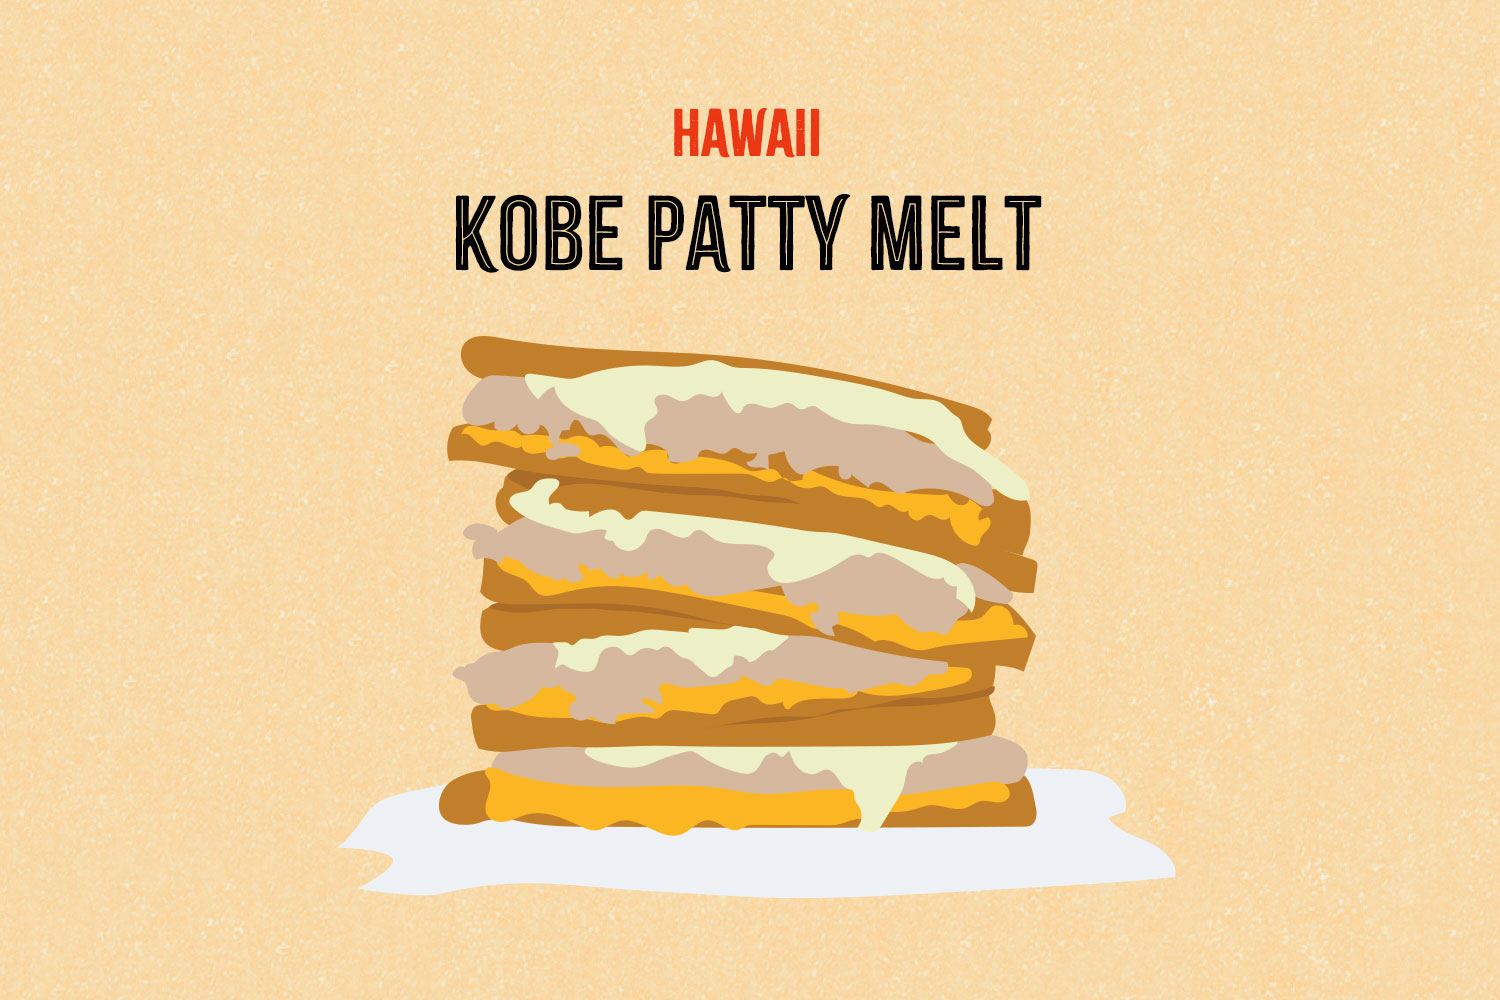 Kobe Patty Melt illustration